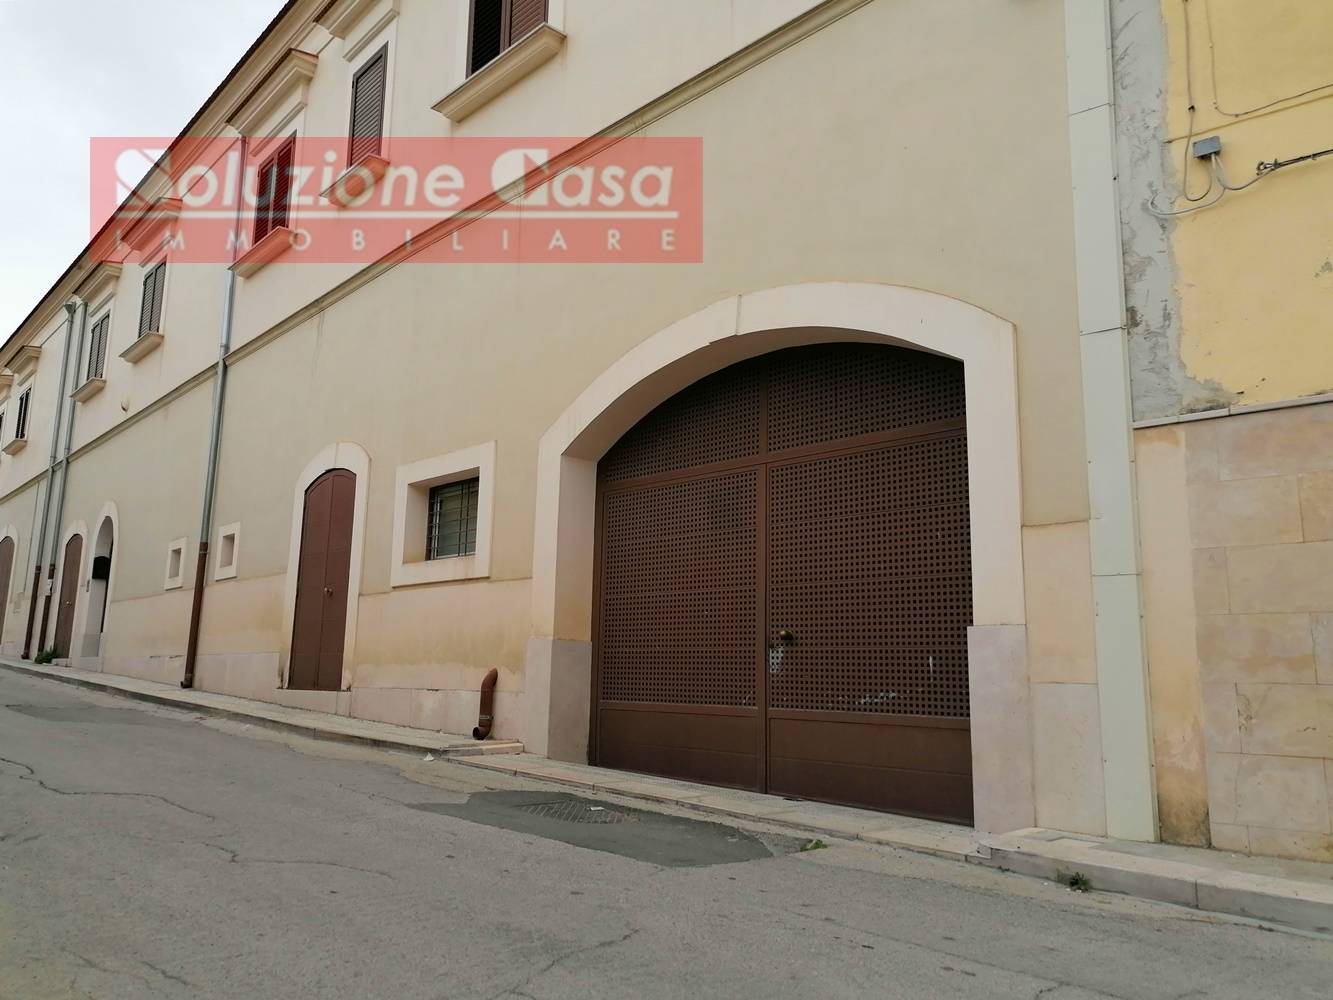 Magazzino in affitto a Canosa di Puglia, 1 locali, prezzo € 110.000 | CambioCasa.it